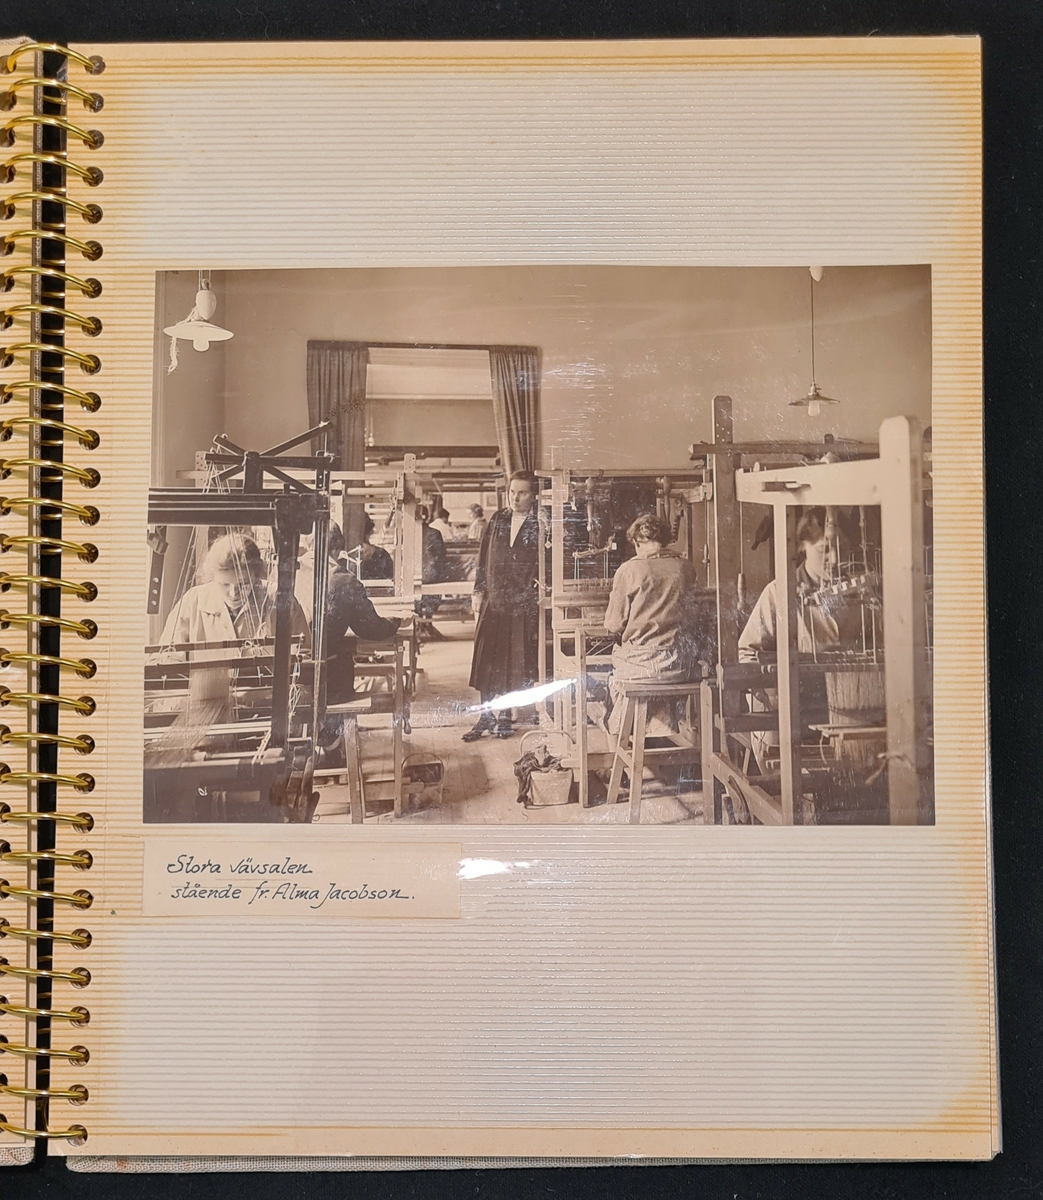 Fotoalbum med fotografier från Johanna Brunssons vävskola, samlade av Martha Nycander.
(Johanna Brunsson f. 24 aug 1846 d. 11 dec 1920.)